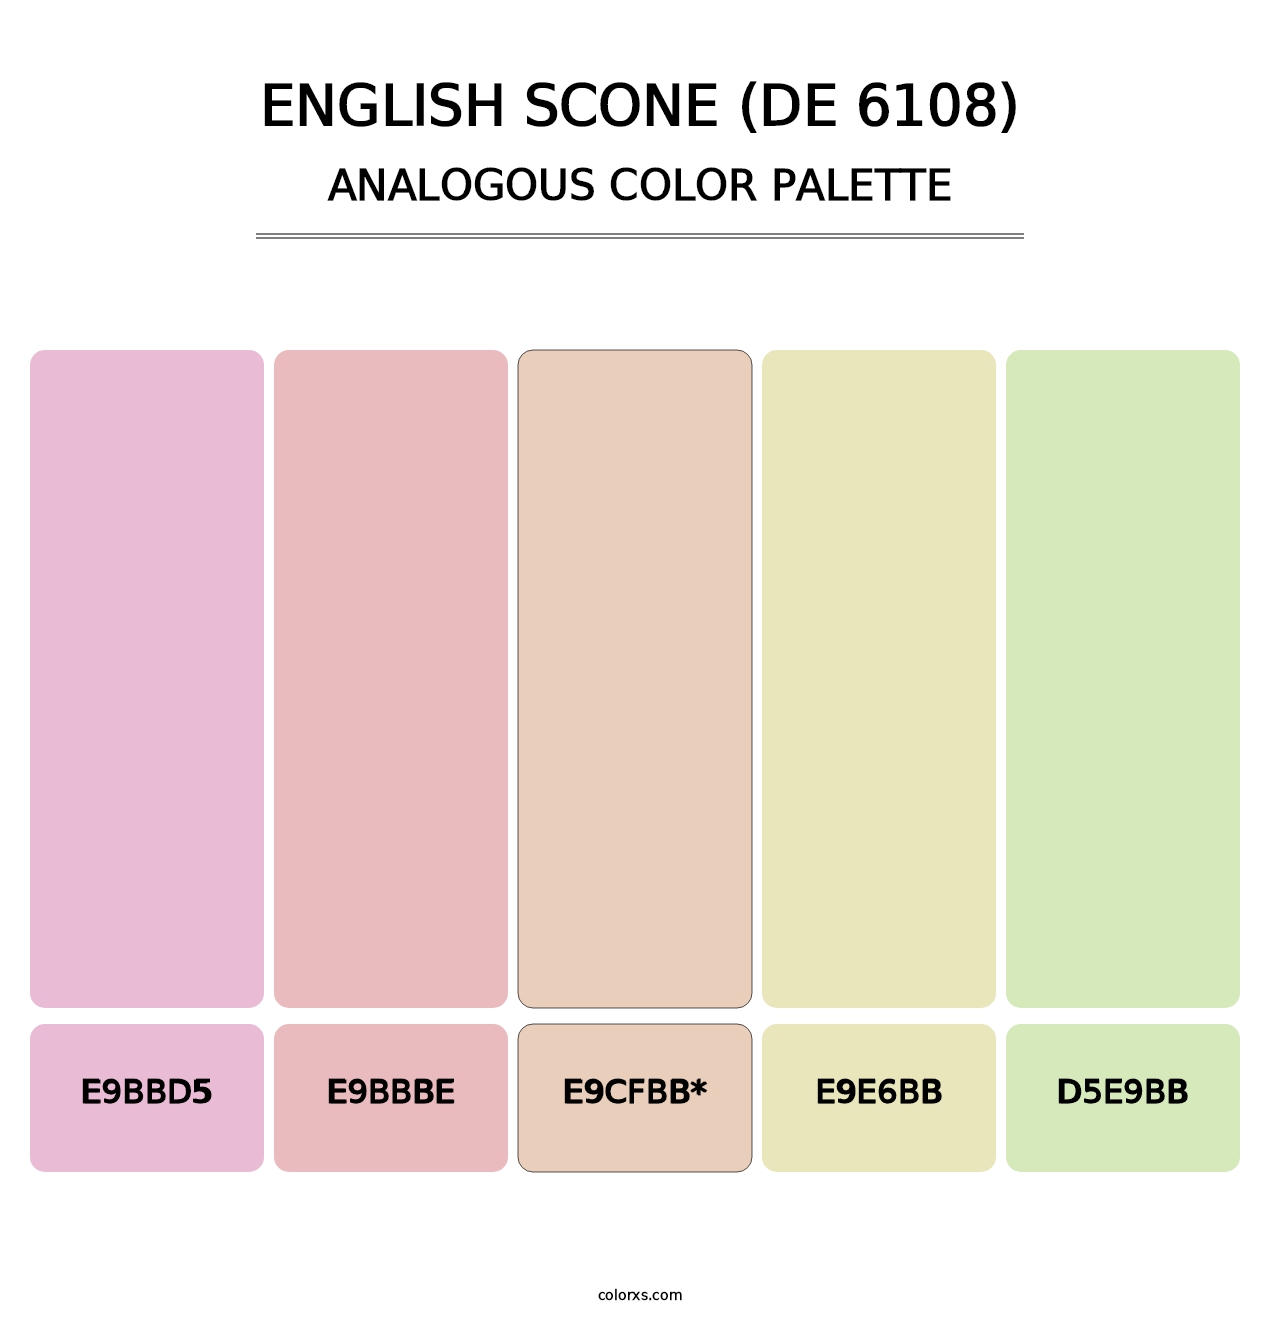 English Scone (DE 6108) - Analogous Color Palette